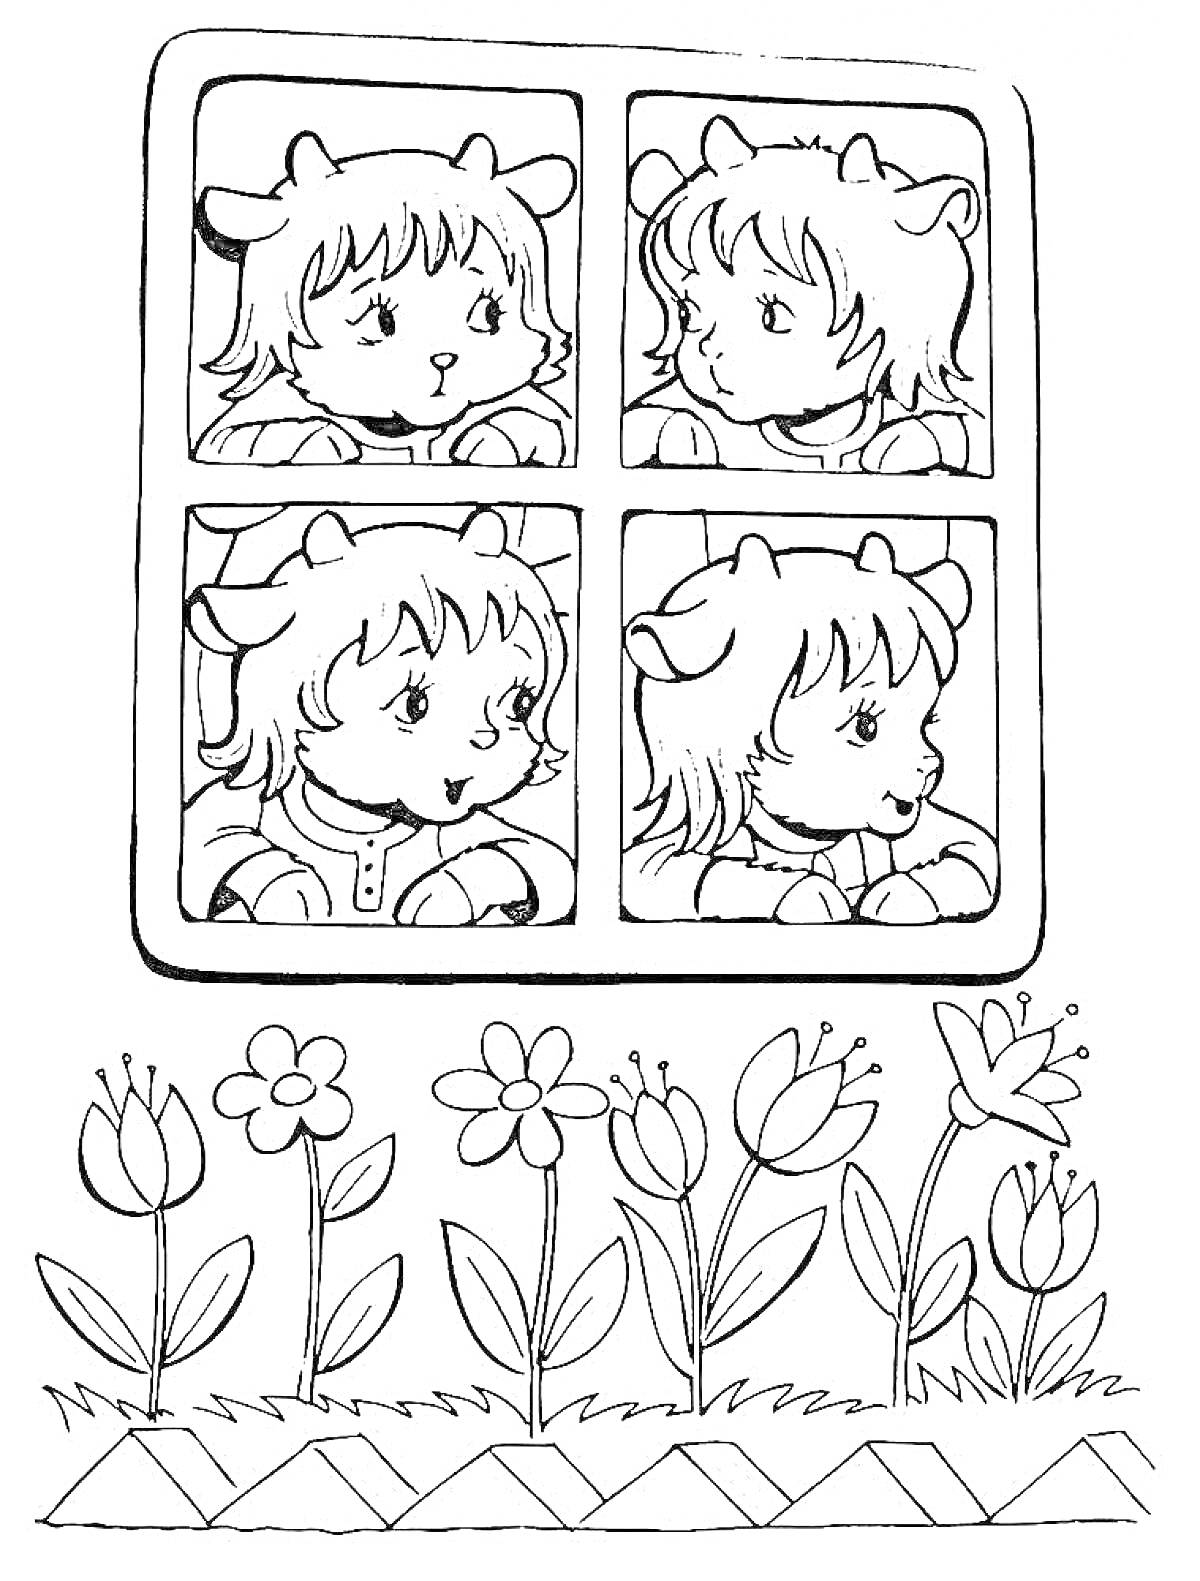 Раскраска Семеро козлят смотрят в окно из четырёх секций, цветы перед окном